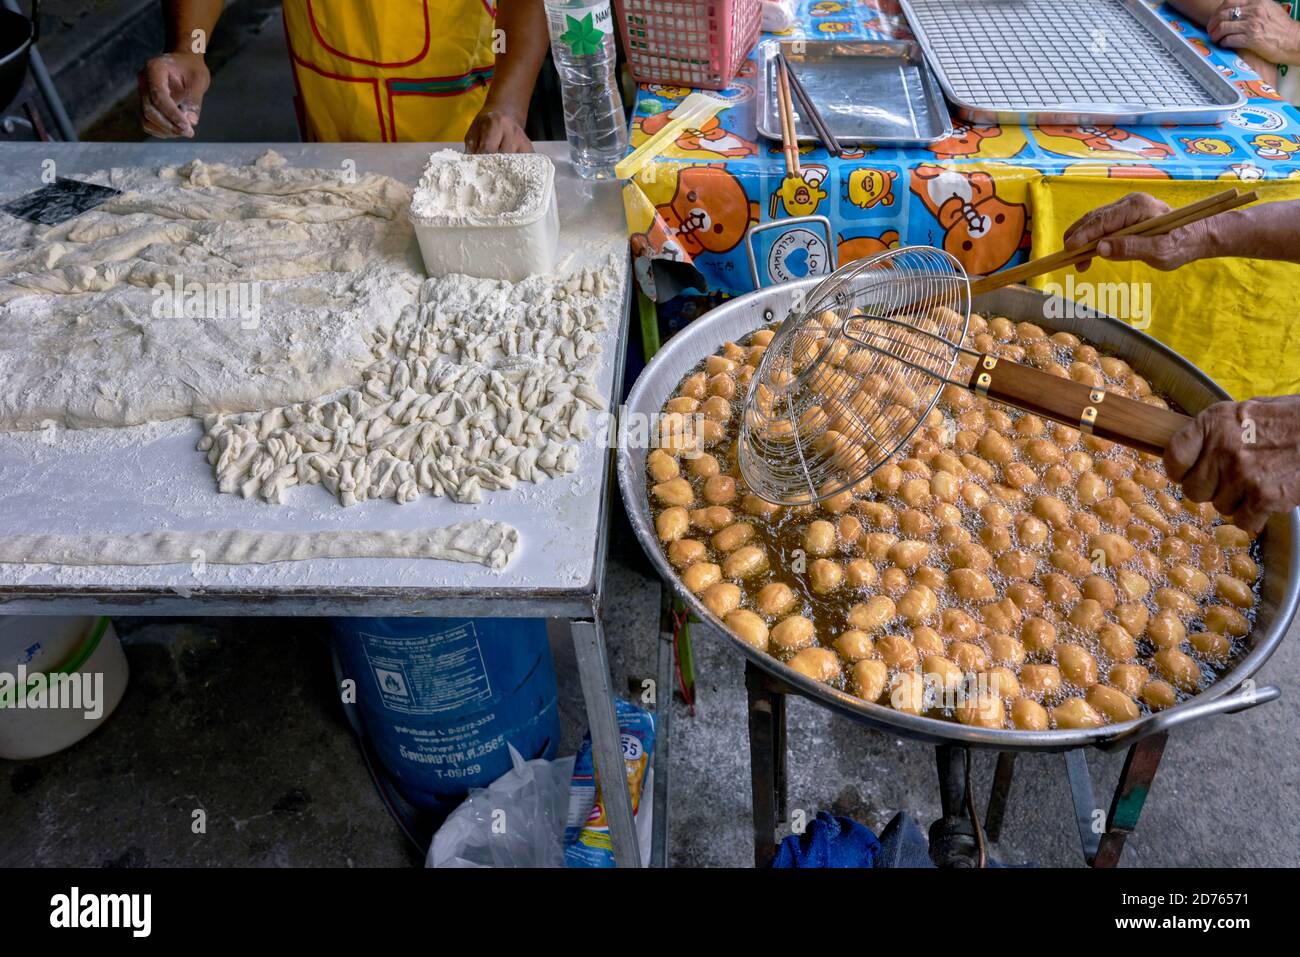 Panettiere preparazione di palle di pane zuccherate fritte popolari come spuntino Un complemento per il caffe' alimentare in un mercato alimentare di strada in Thailandia Foto Stock